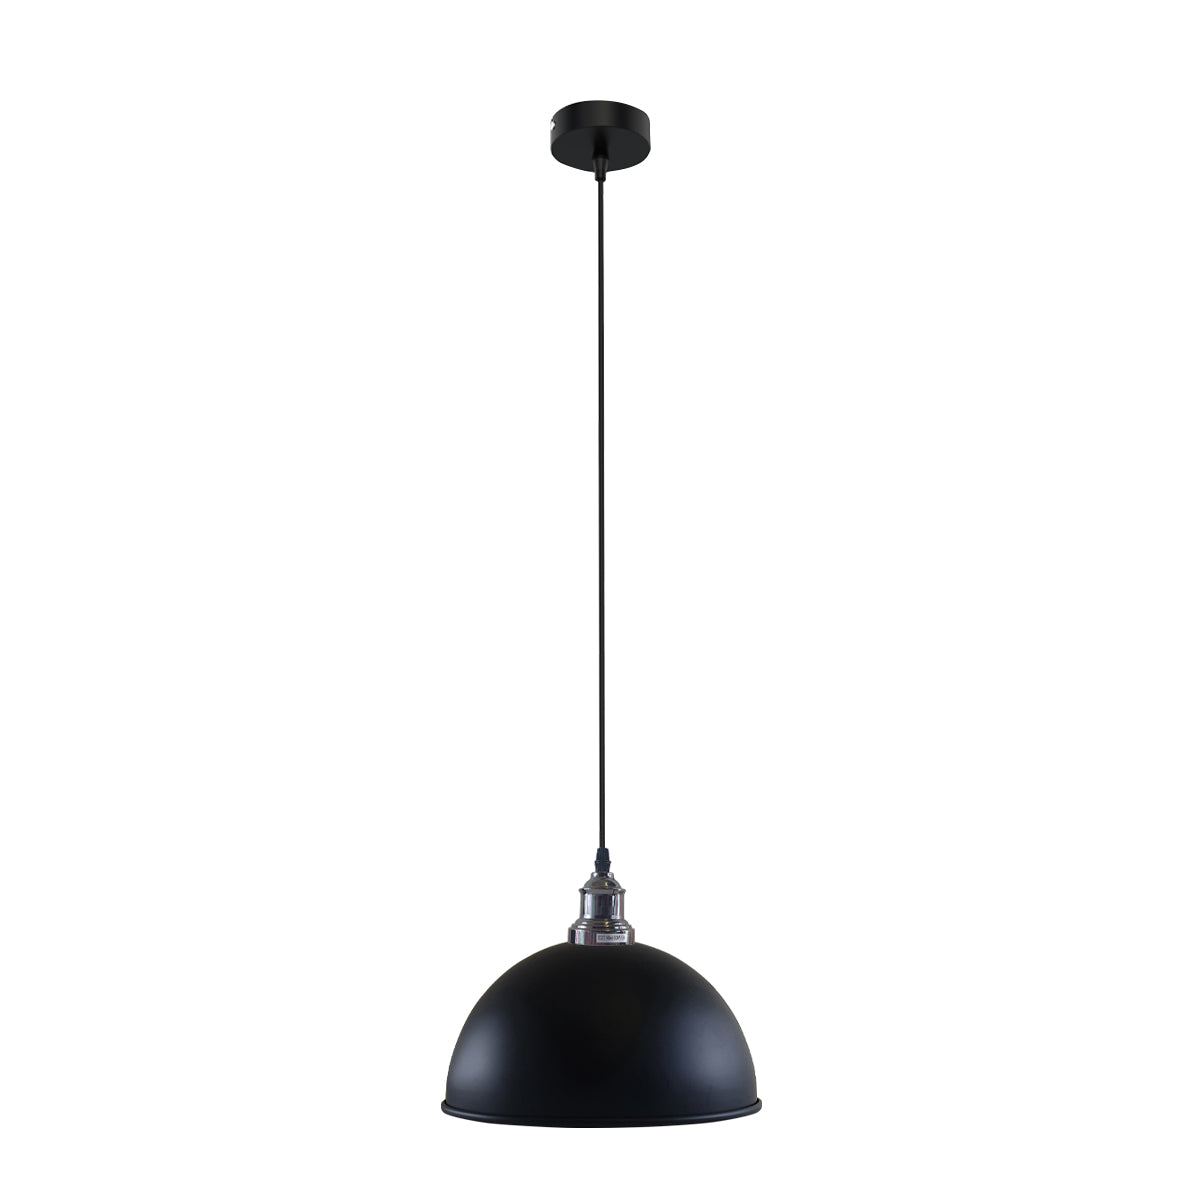 Retro Industrial Ceiling E27 Hanging Pendant Light Shade Black White Inner